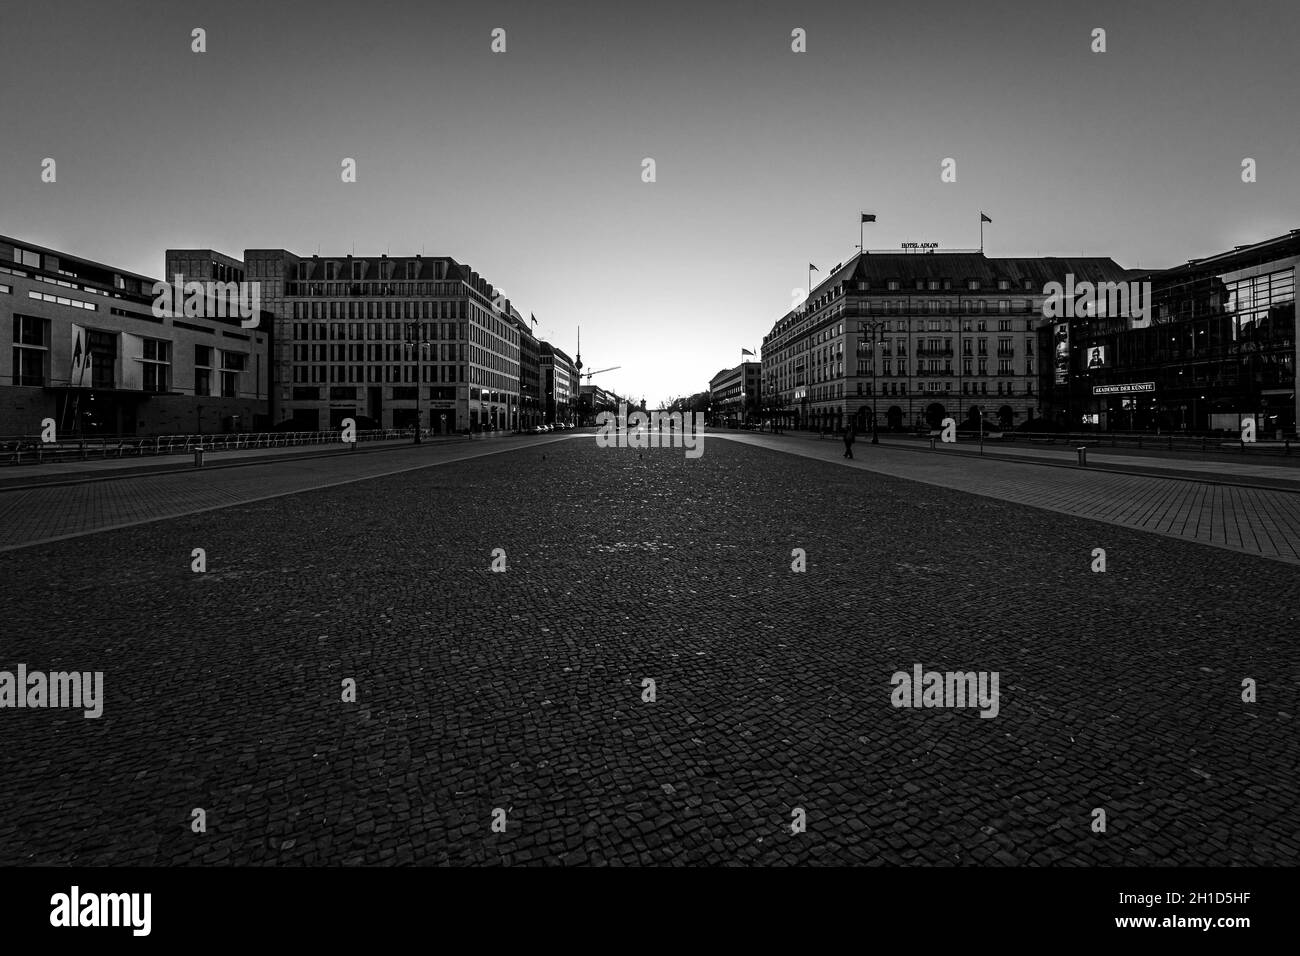 BERLIN - 22 MARS 2020: L'hôtel cinq étoiles Adlon, Pariser Platz (place de Paris) près de la porte de Brandebourg et du boulevard Unter den Linden.Région désertique Banque D'Images